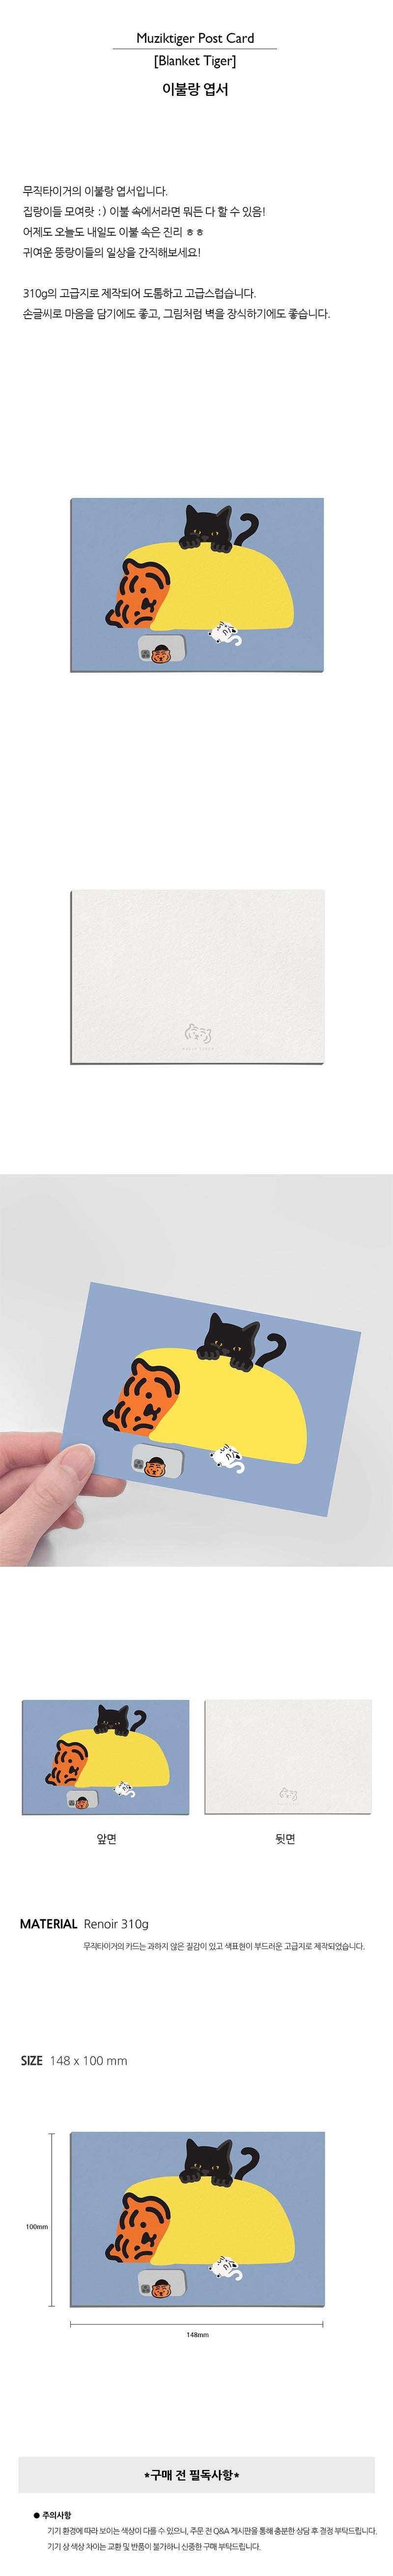 Blanket Tiger Postcard